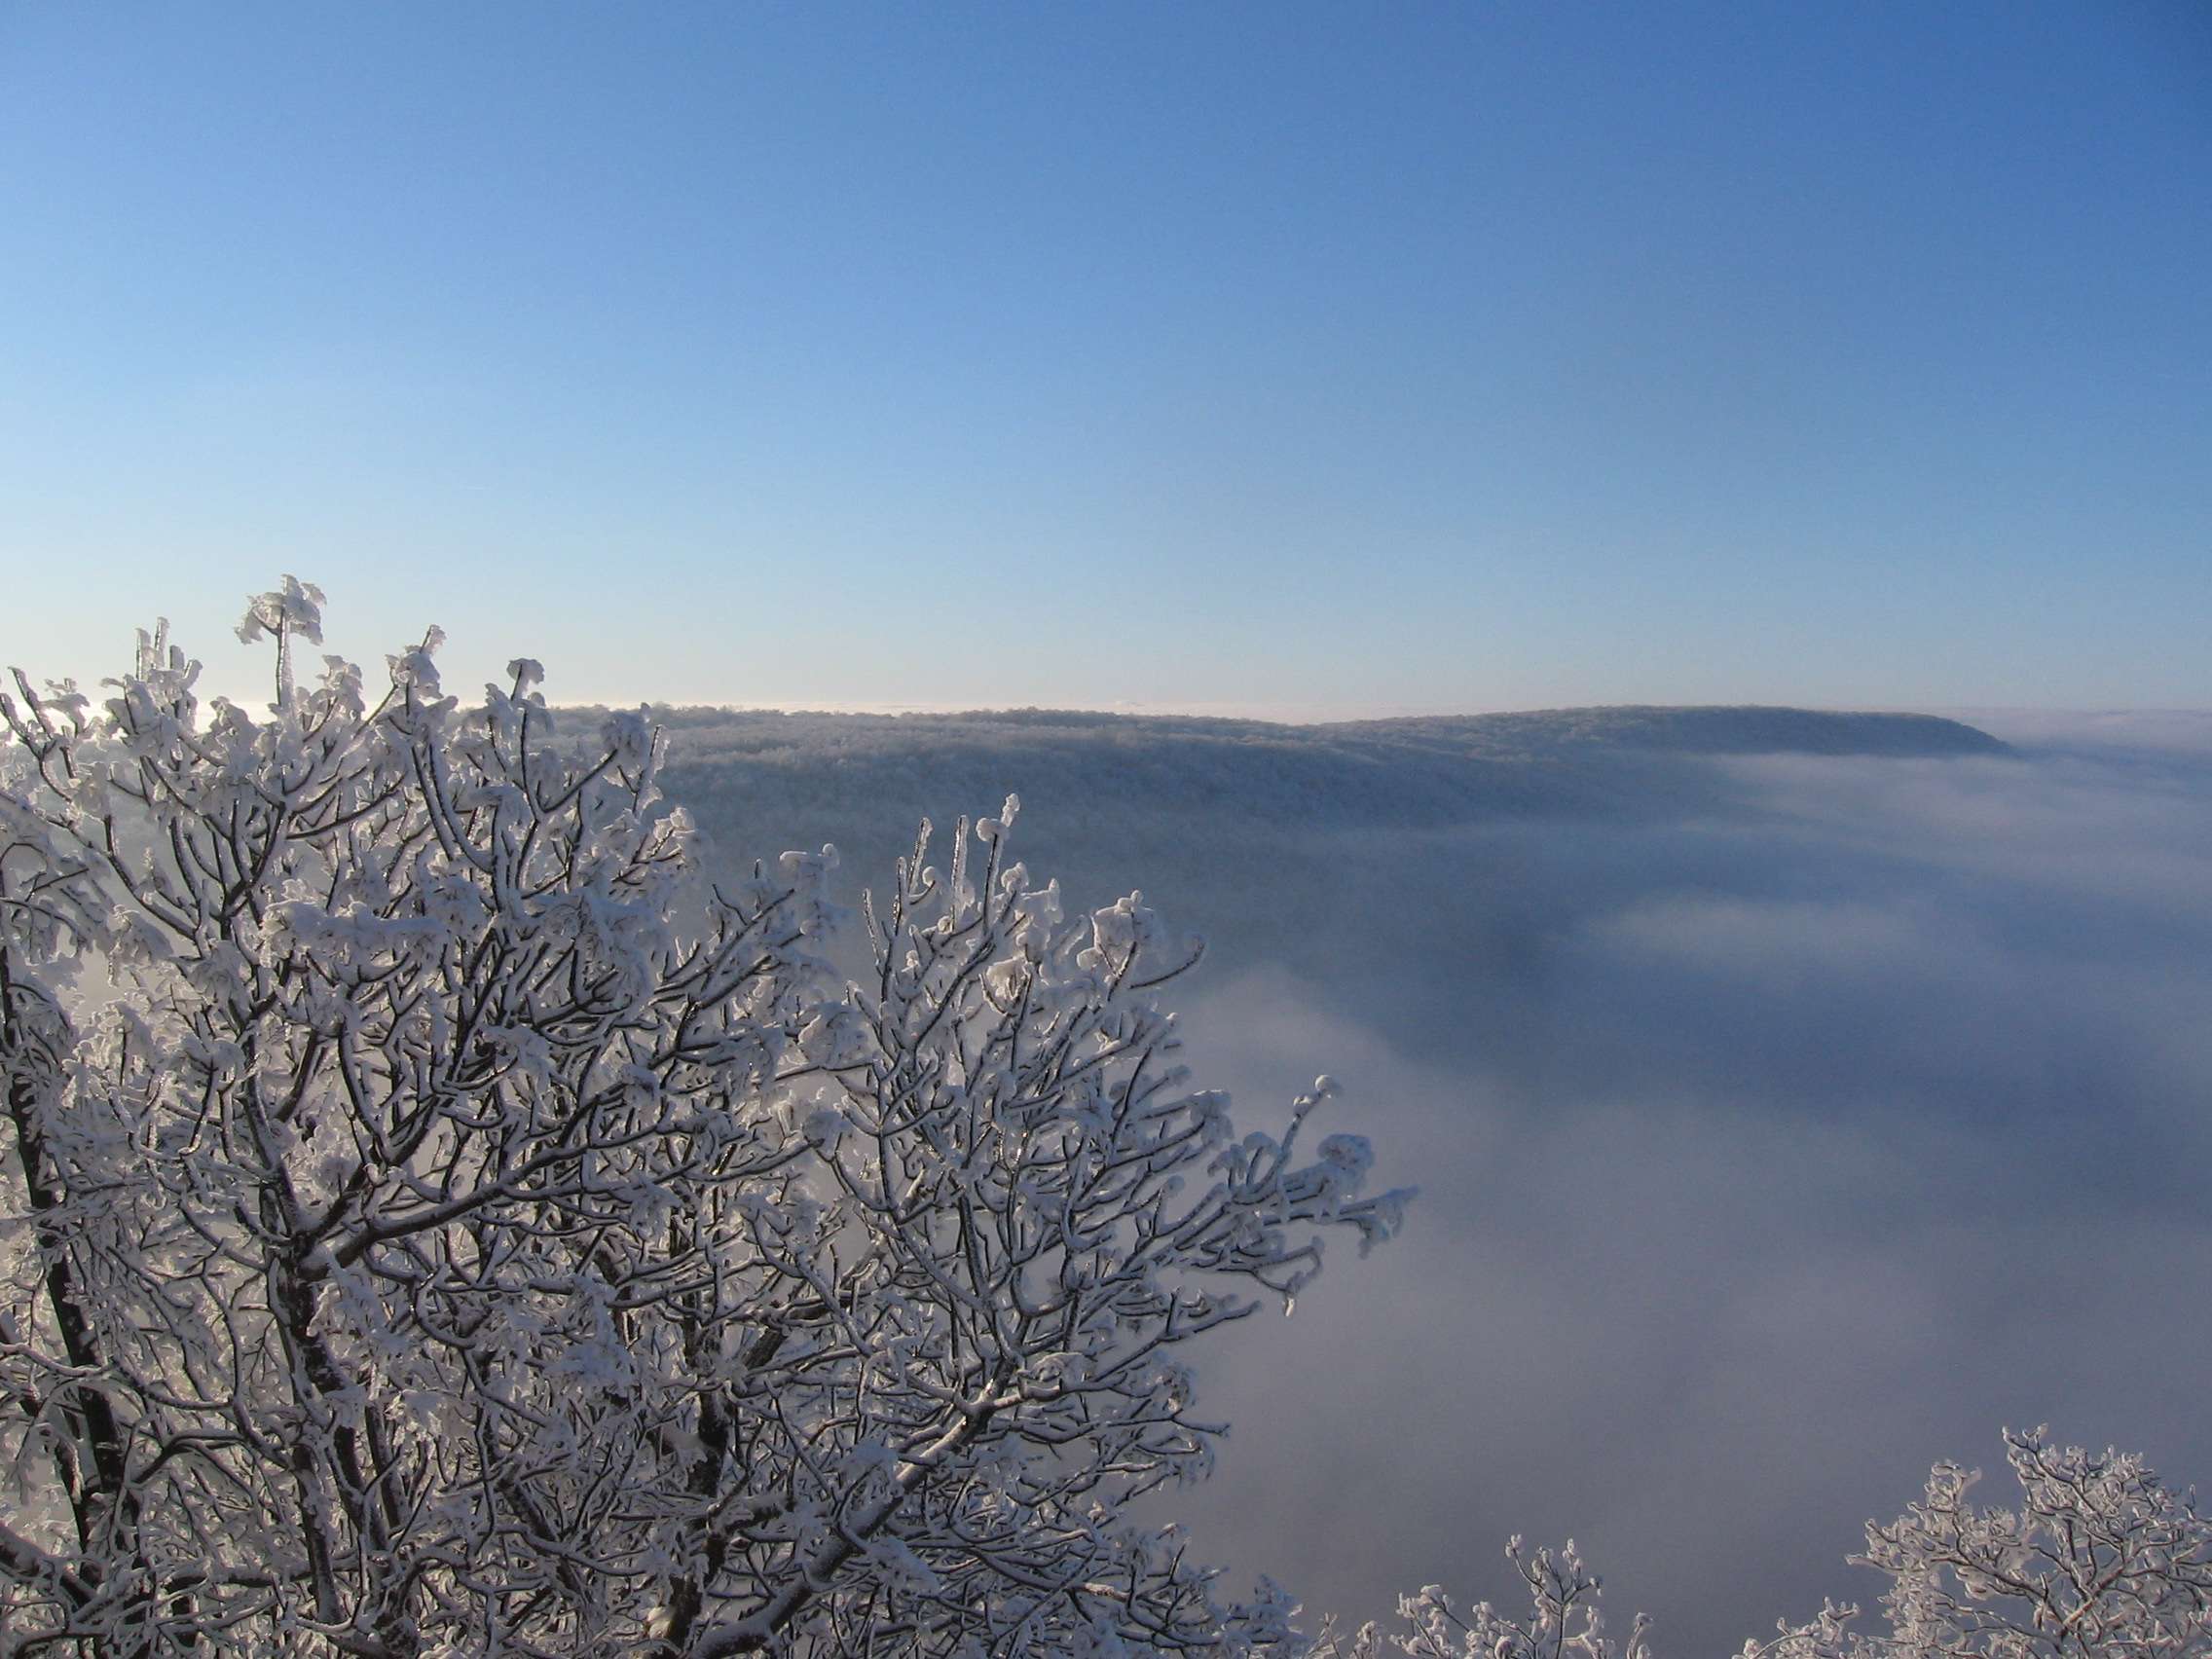 Felhők felett - Legszebb téli fotók (Fotópályázat 2012-2013)